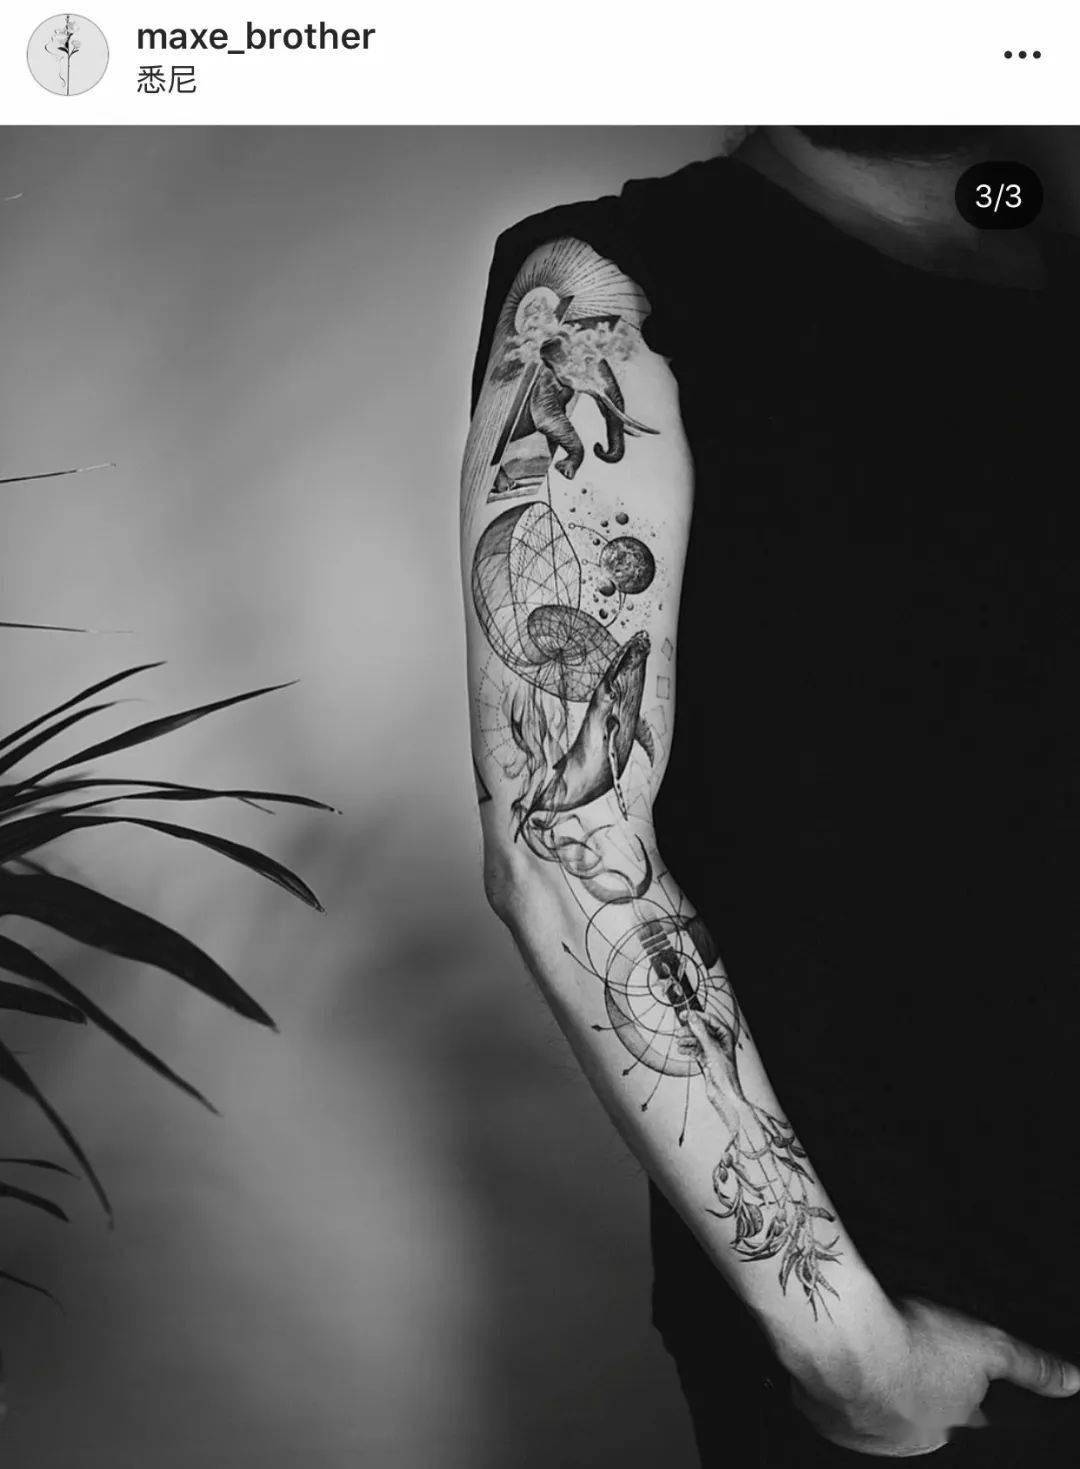 这期分享的纹身师我超级超级喜欢,纹身风格属于单针大花臂,内容元素